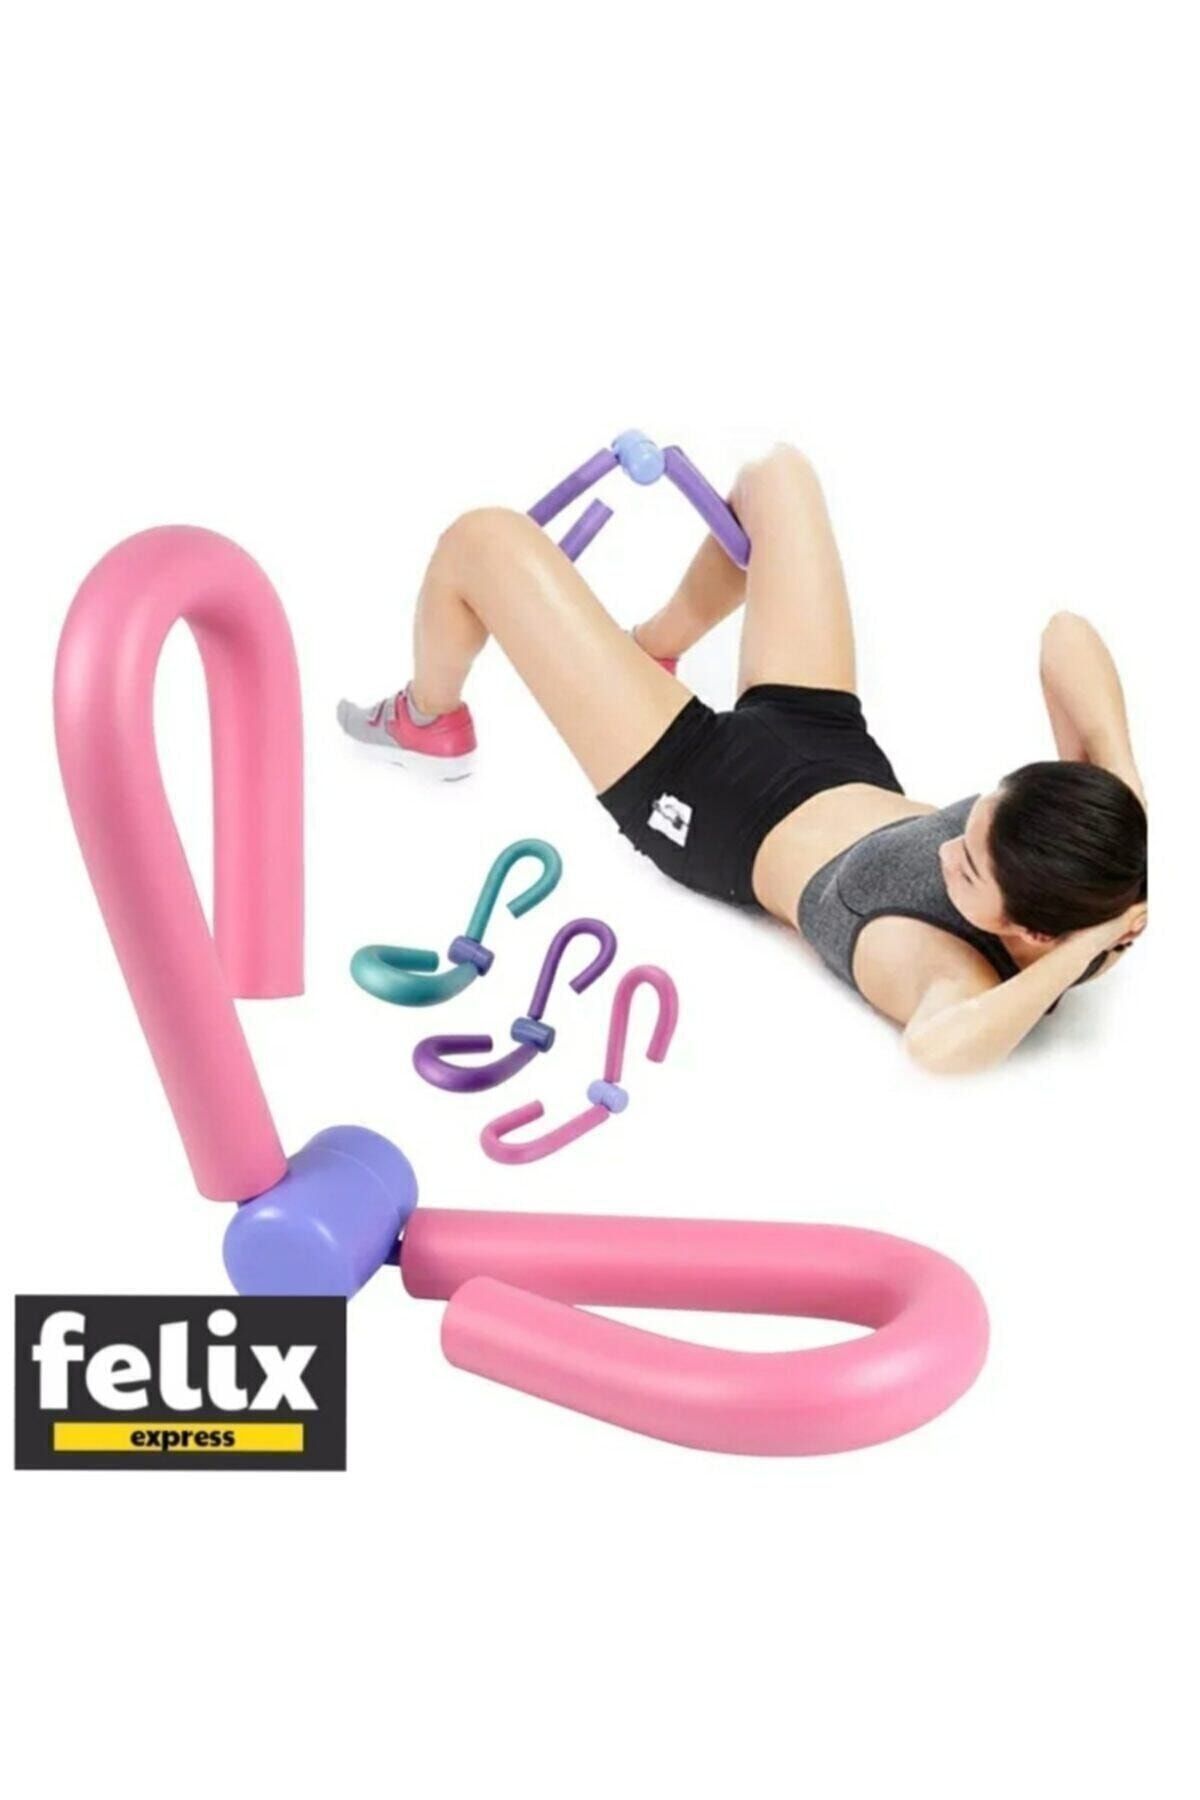 felix express Kol Bacak Basen Sıkılaştırıcı Kelebek Egzersiz Aleti Ve Plates Vücut Şekillendirici Direnç Lastiği